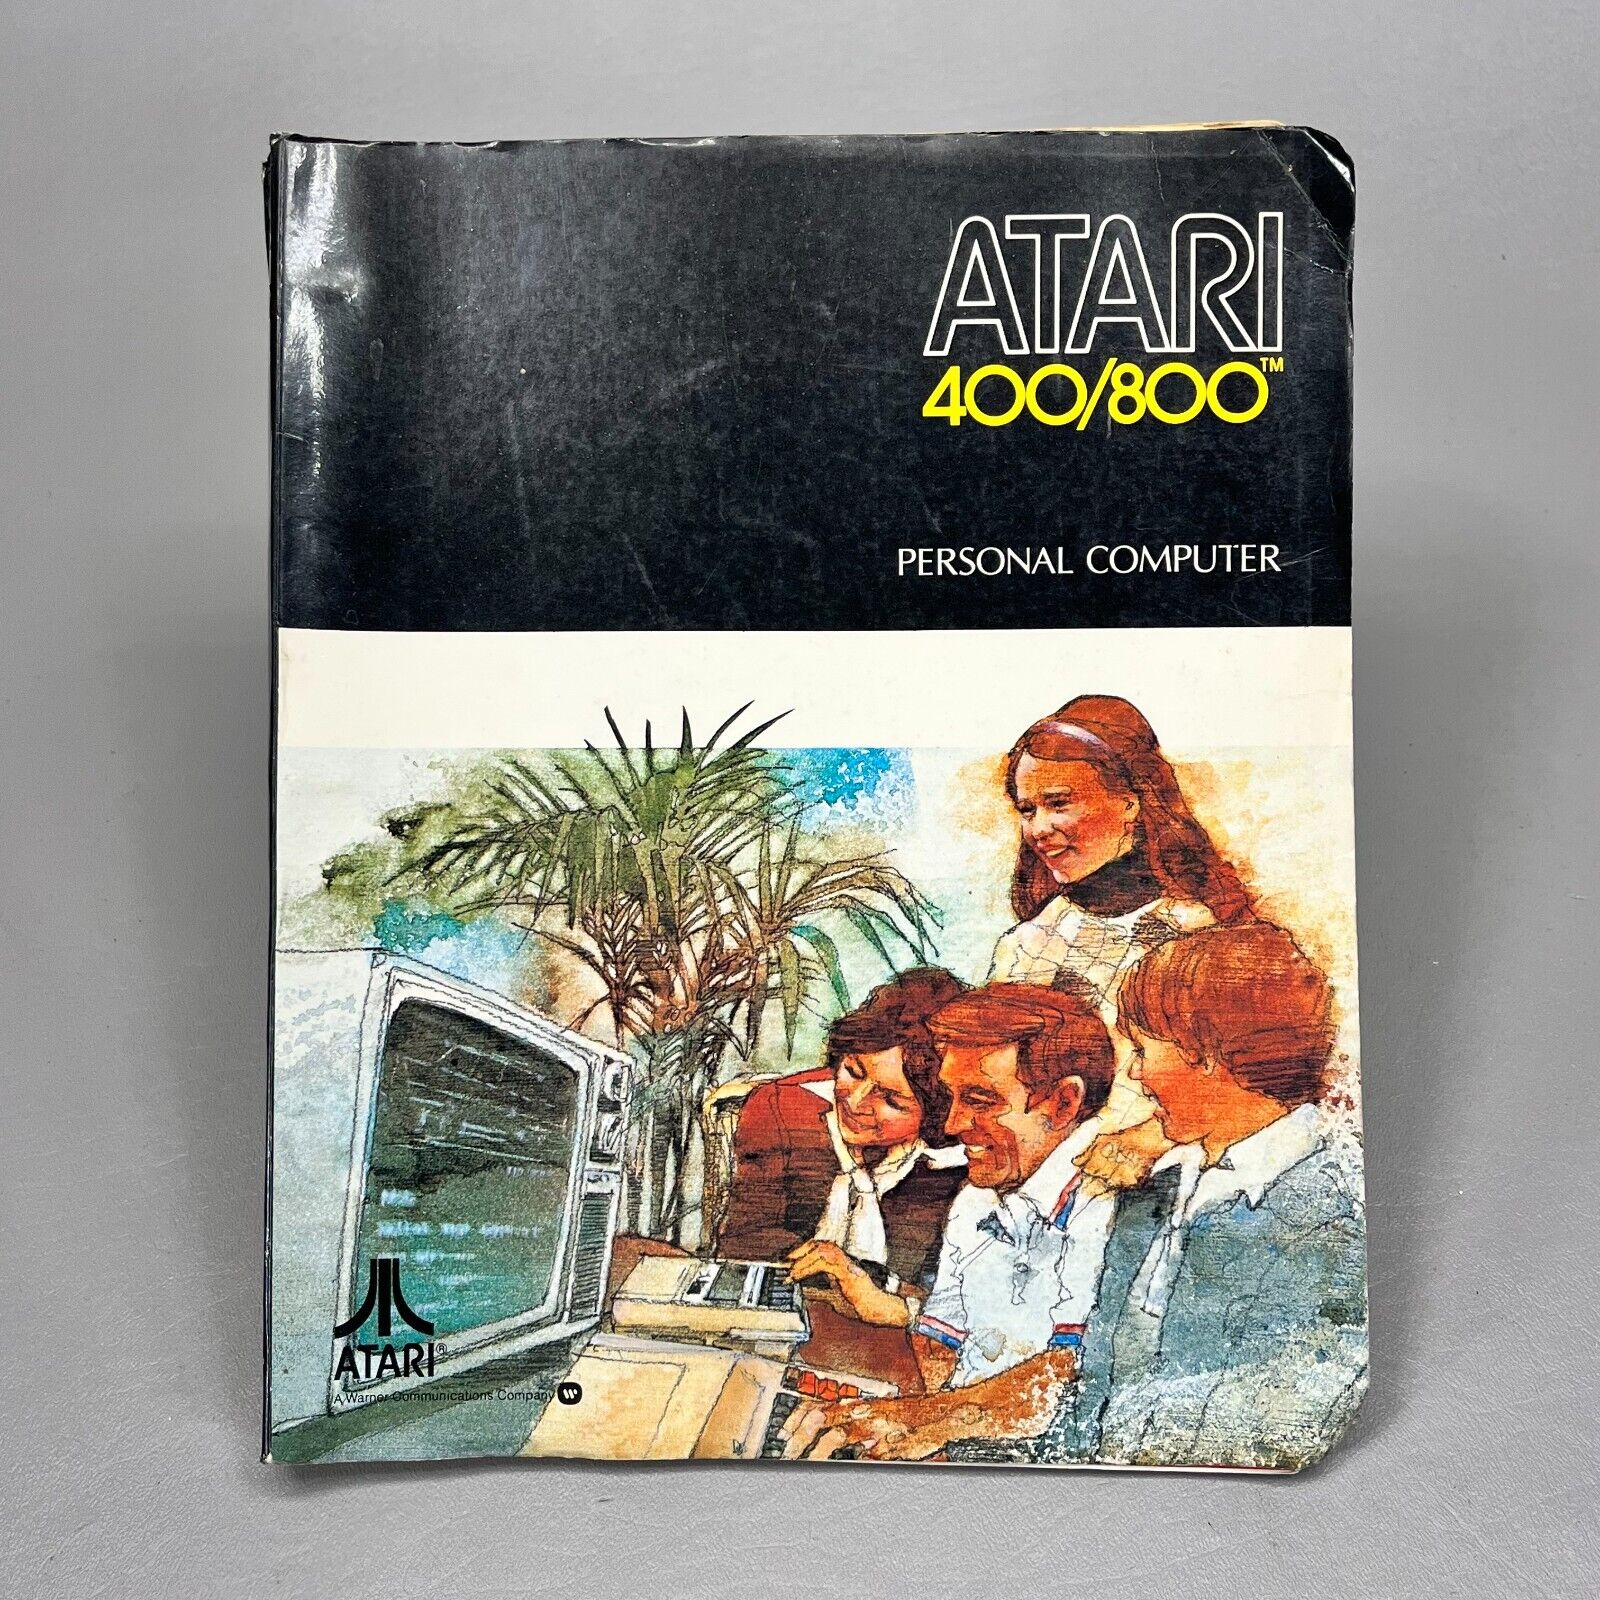 Atari 400/800 Personal Computer Reference Manual 1979 Vintage Part No. C0114722